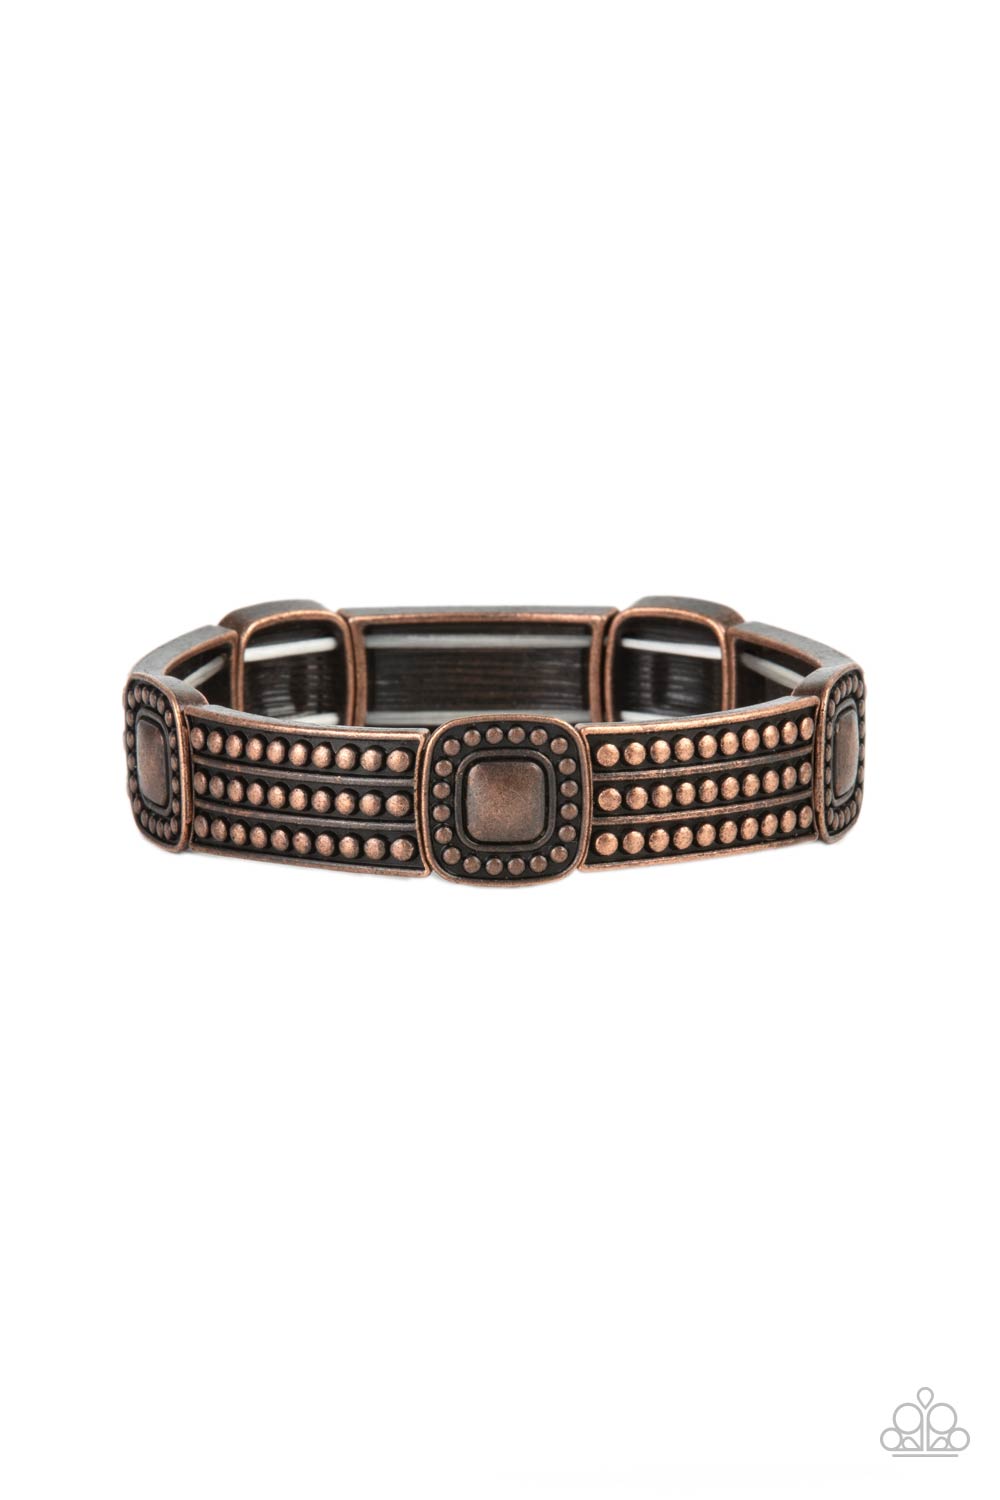 Rustic Redux - copper - Paparazzi bracelet